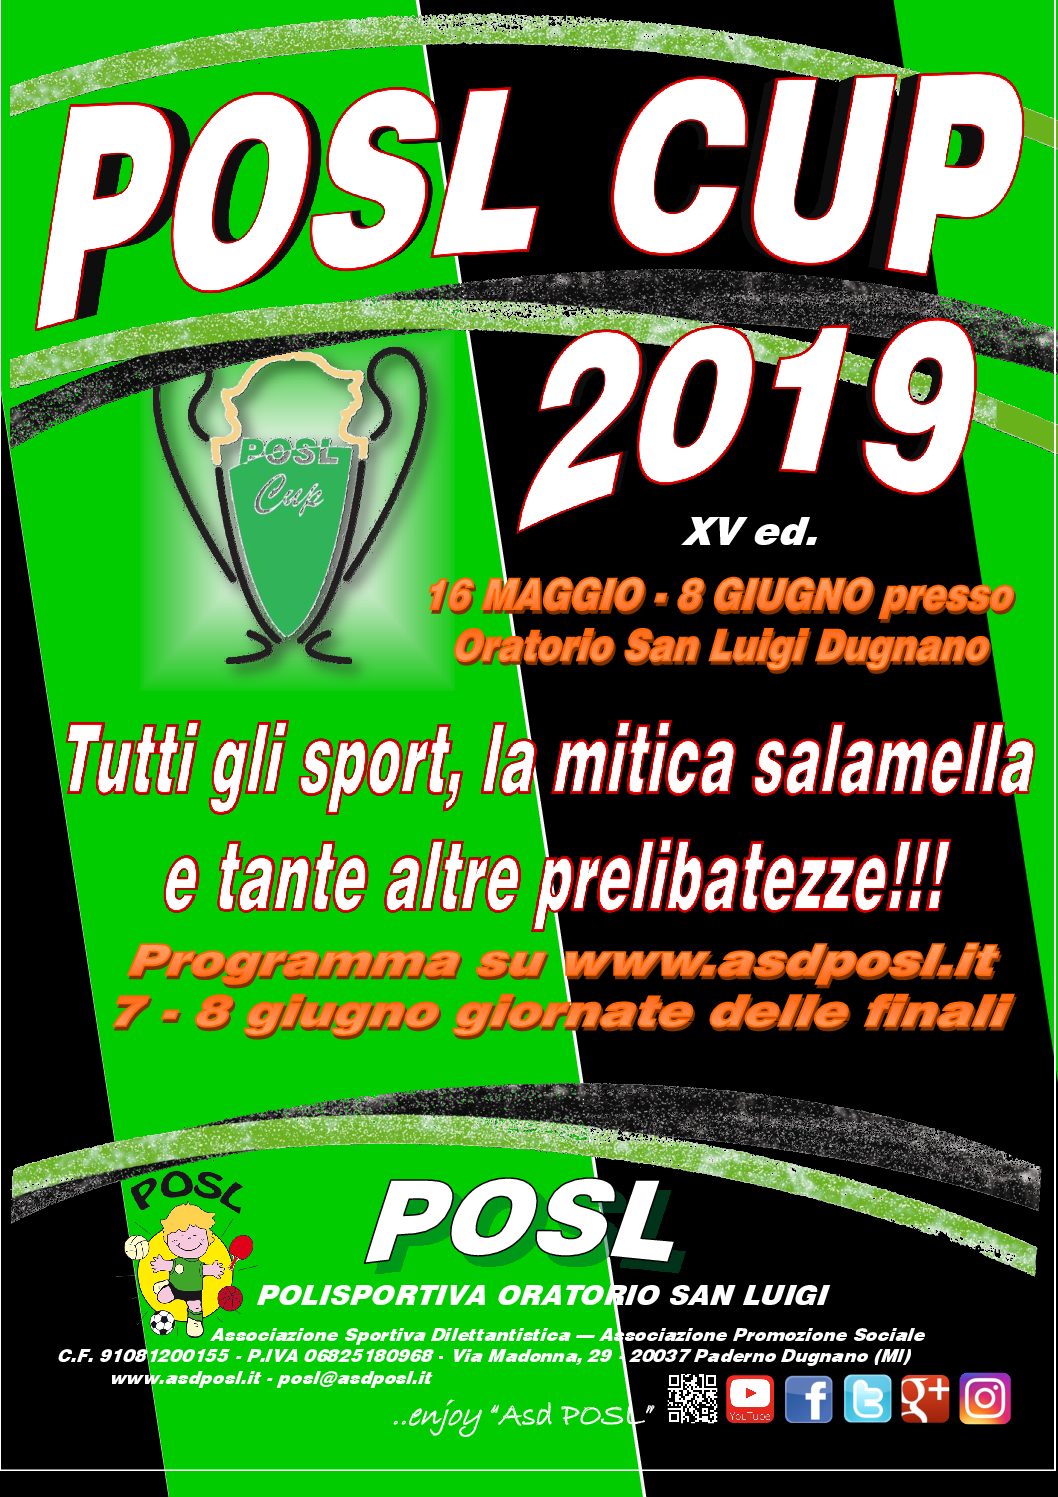 POSL CUP 2019: completata la programmazione